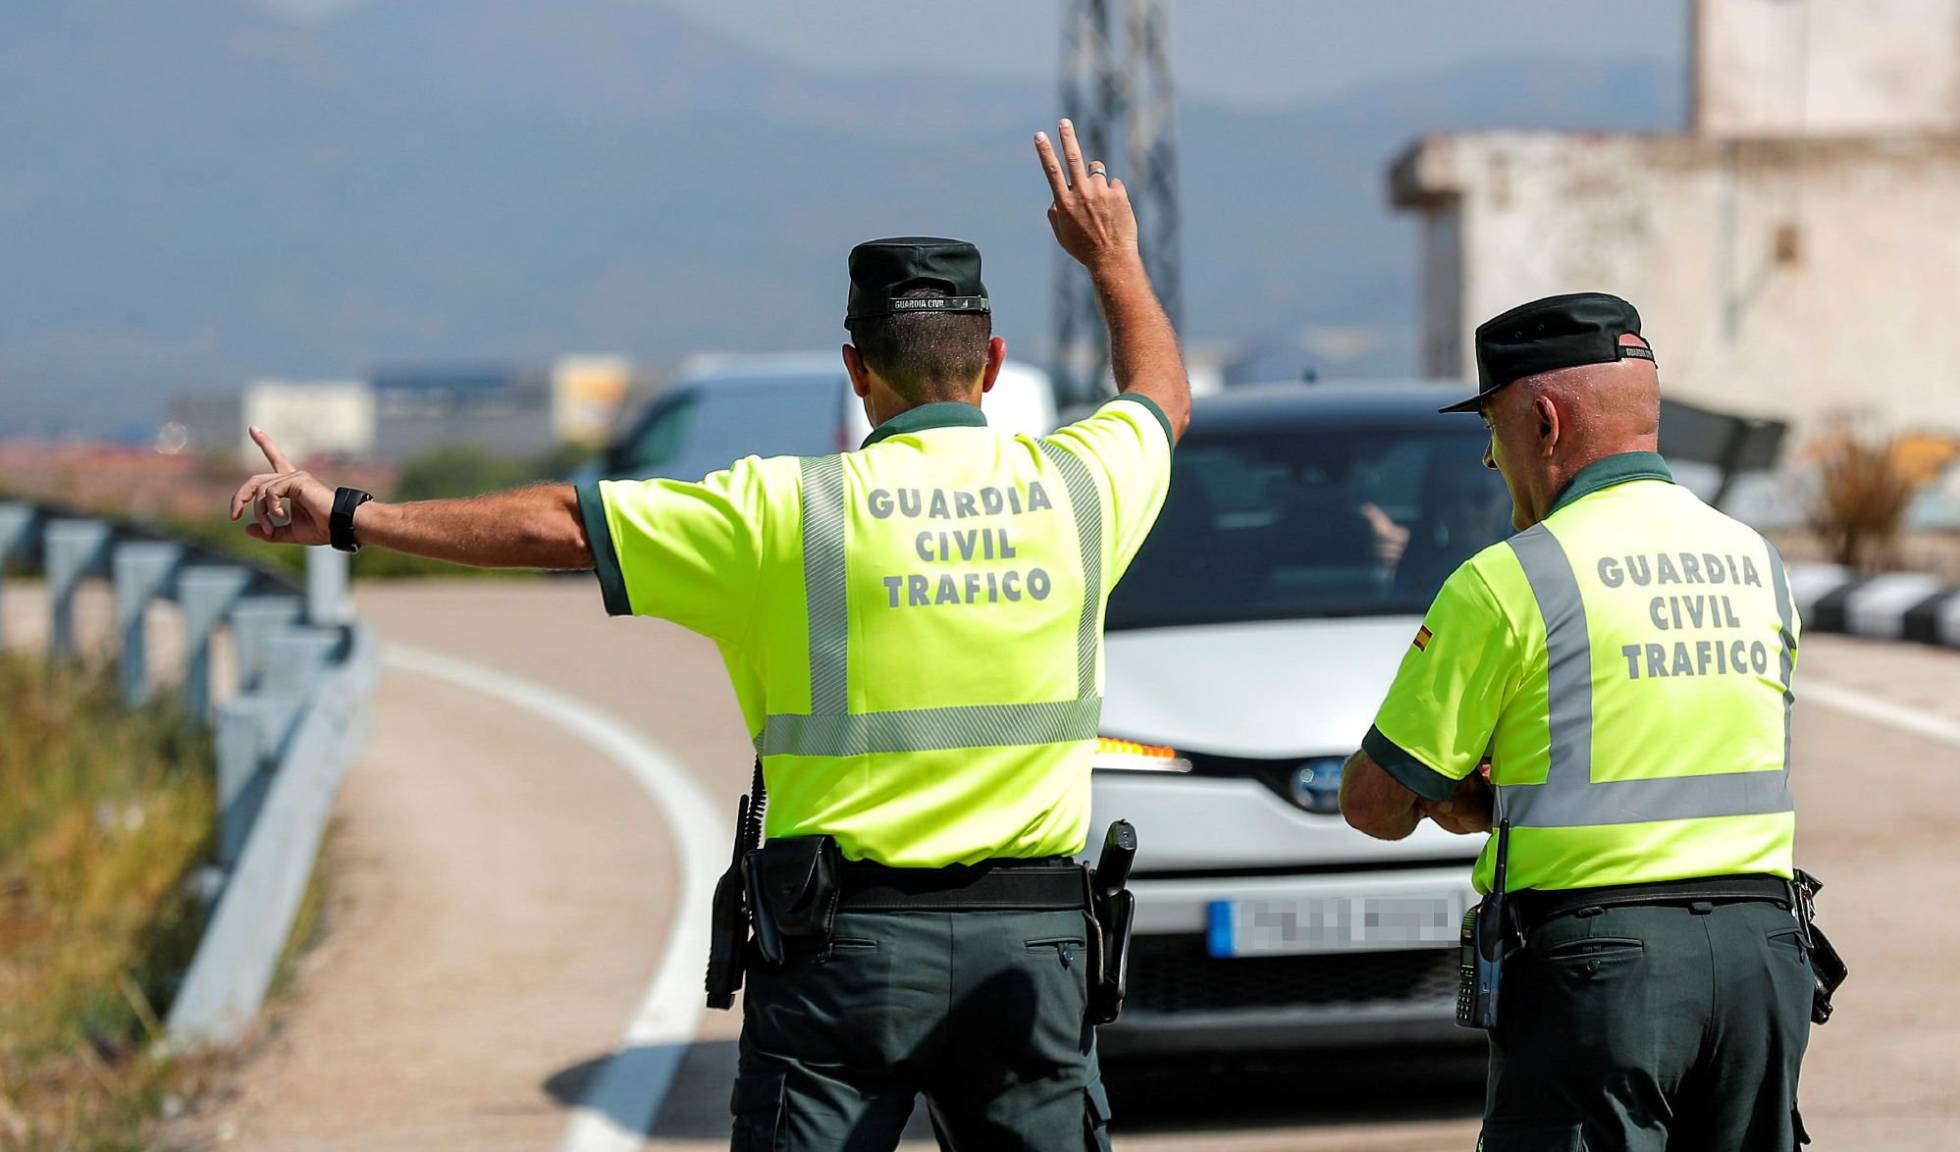 javier merino abogado gijon asturias accidente trafico indemnización lesiones circulación